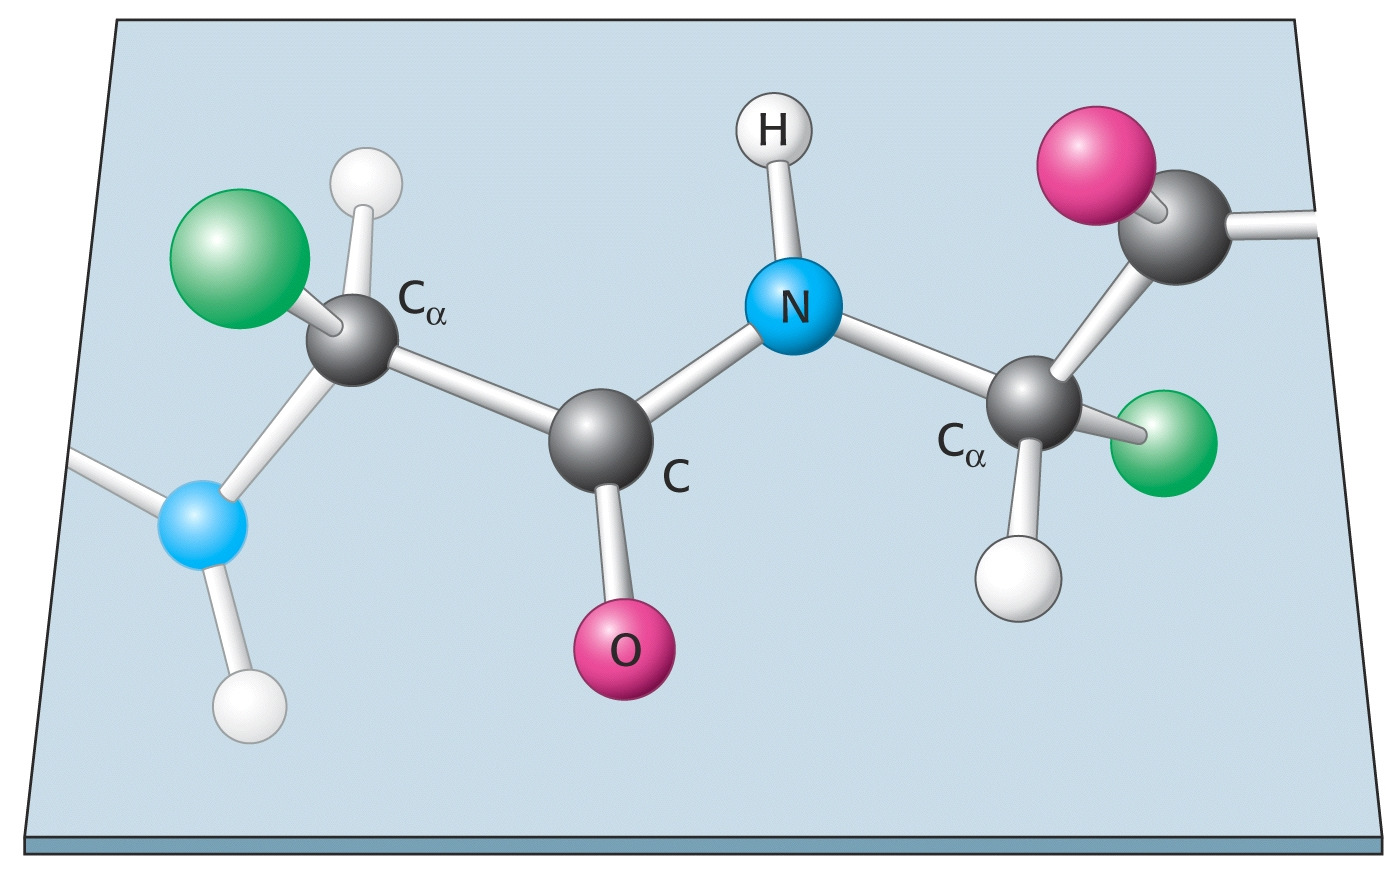 Poliamid polimerek: az amidkötés téralkata A határszerkezetek szemléltetik hogy 2 nemkötő elektronpár 3 centrumra (, C és ) delokalizálódik, így a C- kötésnek